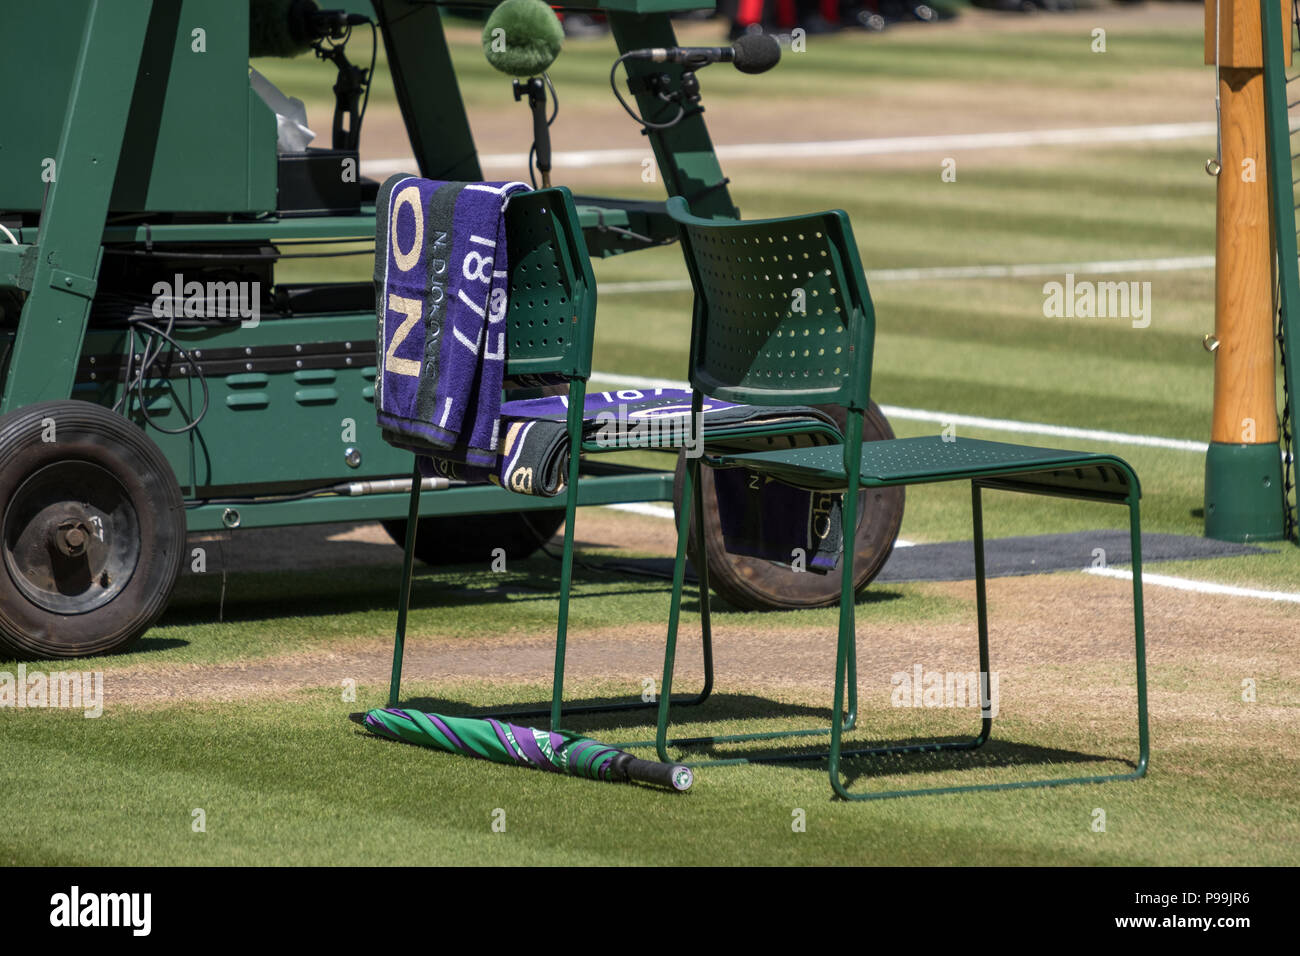 Giocatori' sedie con asciugamano piegato sul retro e una verde e viola ombrello sul terreno. Asciugamano ha il nome di Djokovic su di esso. Foto Stock